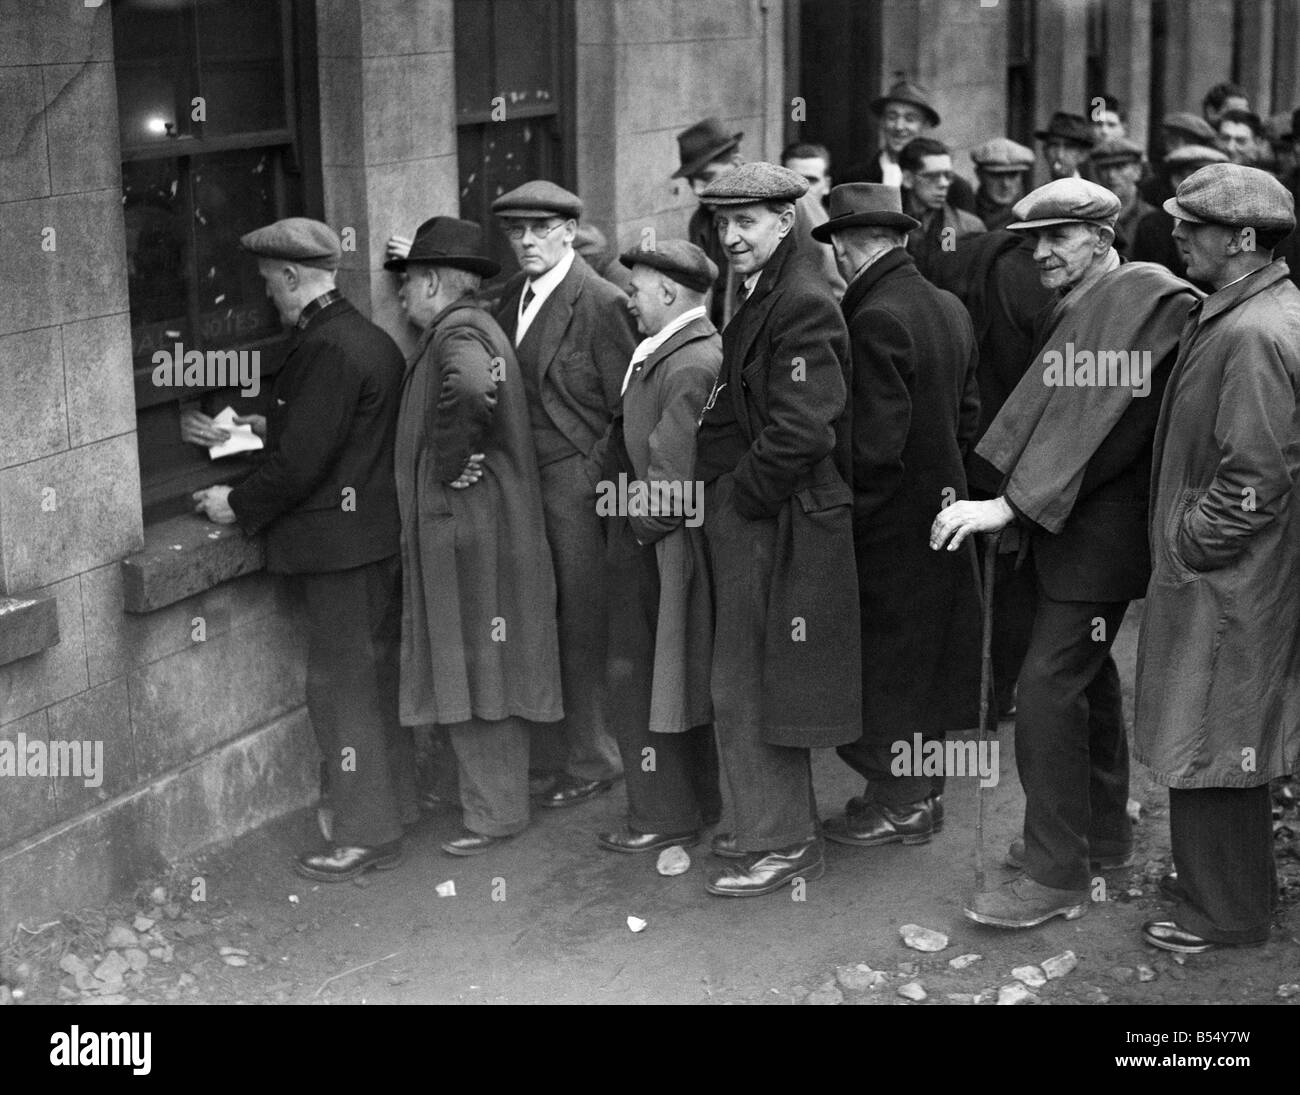 Les mineurs en grève gallois a appelé leur dernière semaine de rémunération à 9 Mile Point Colliery dans onmouthshire', 'Pays de Galles. Mars 1944 Banque D'Images